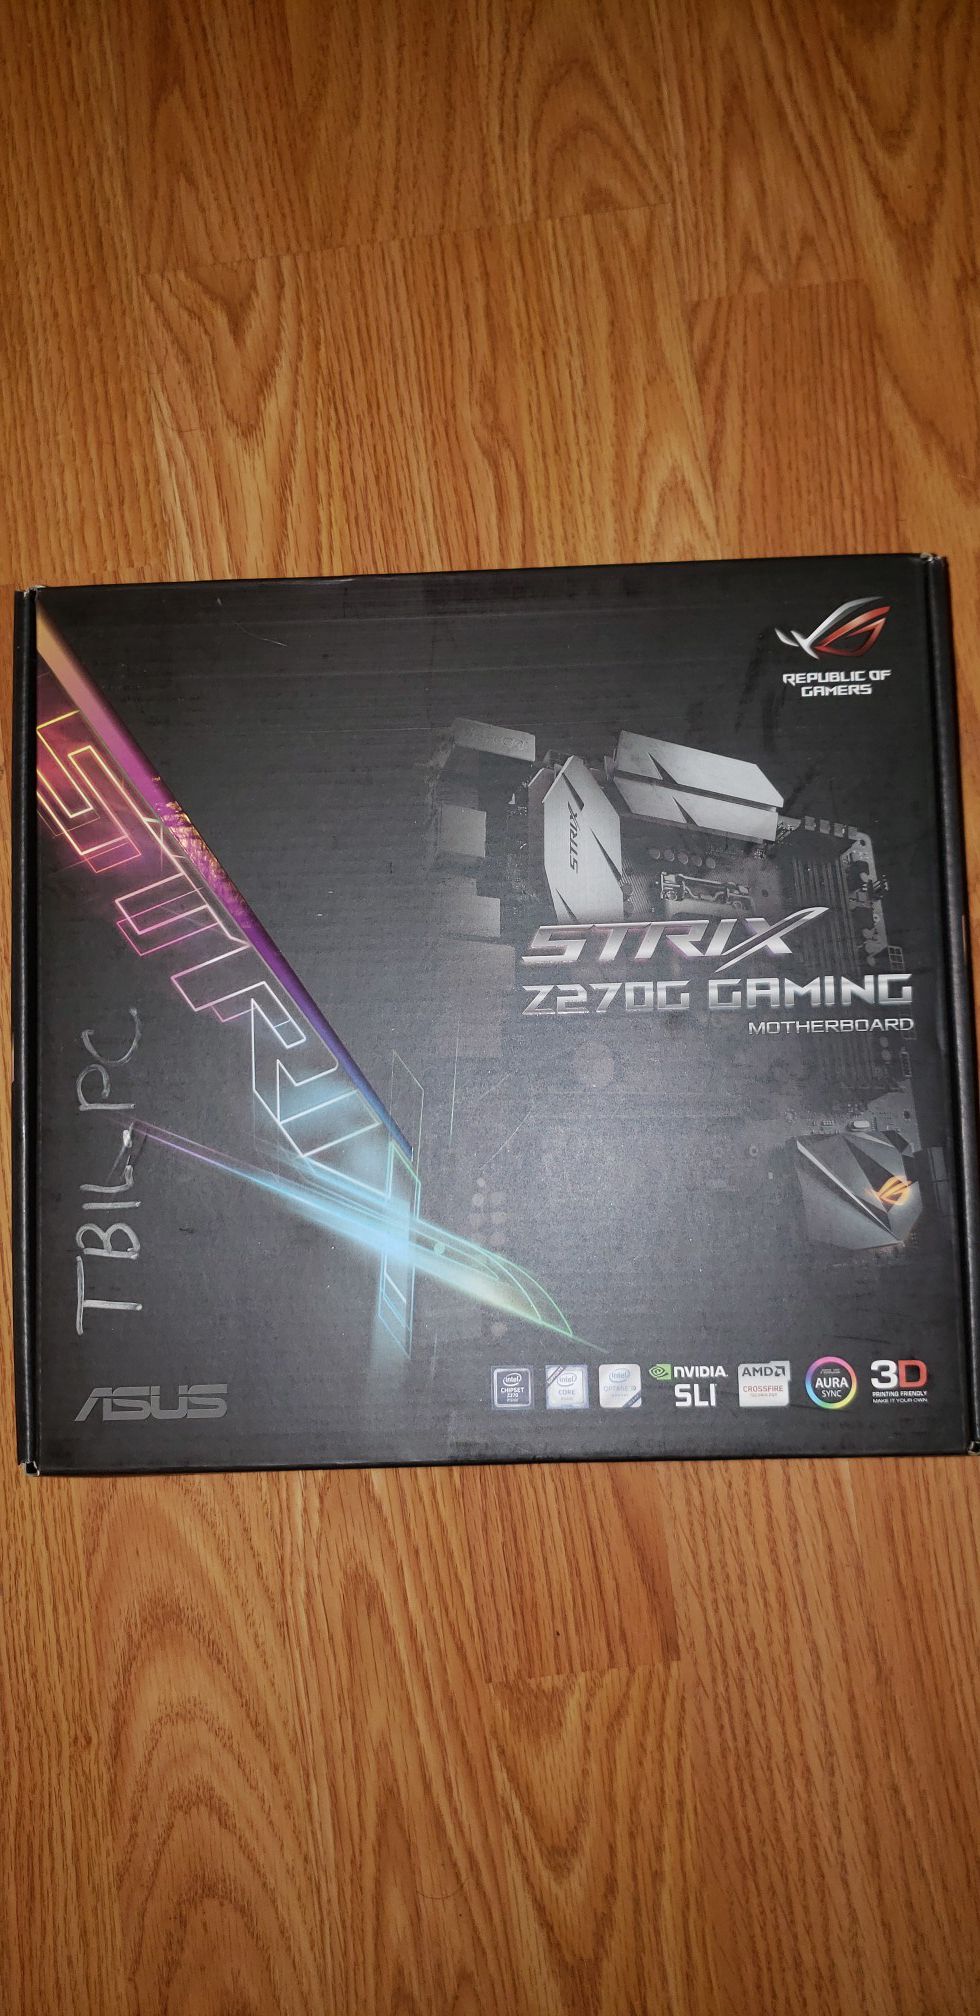 Unused Asus Strix Z270G Gaming Motherboard